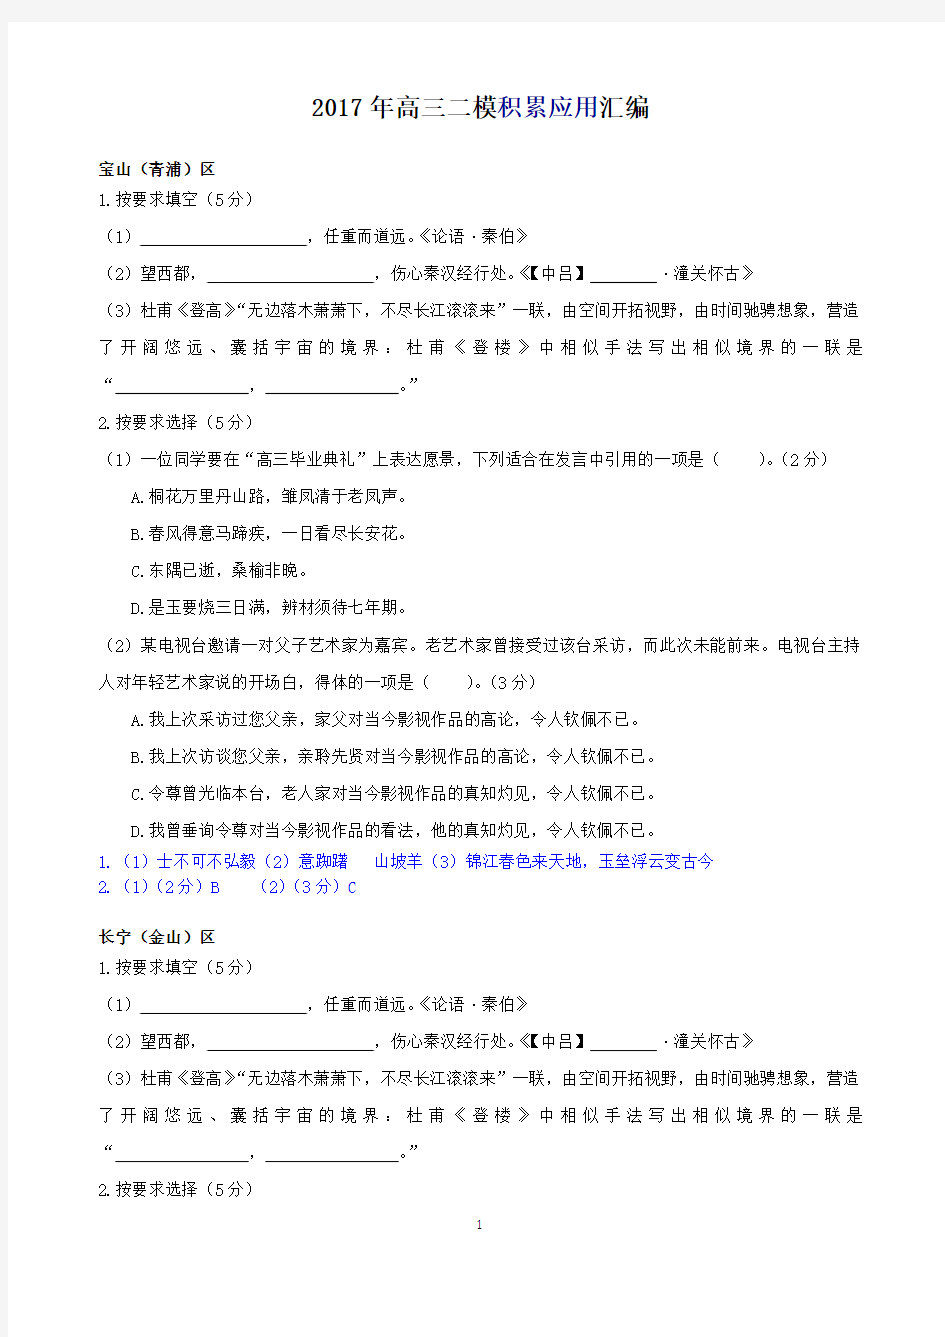 上海市2017年高三语文二模试卷分类汇编及试卷汇总